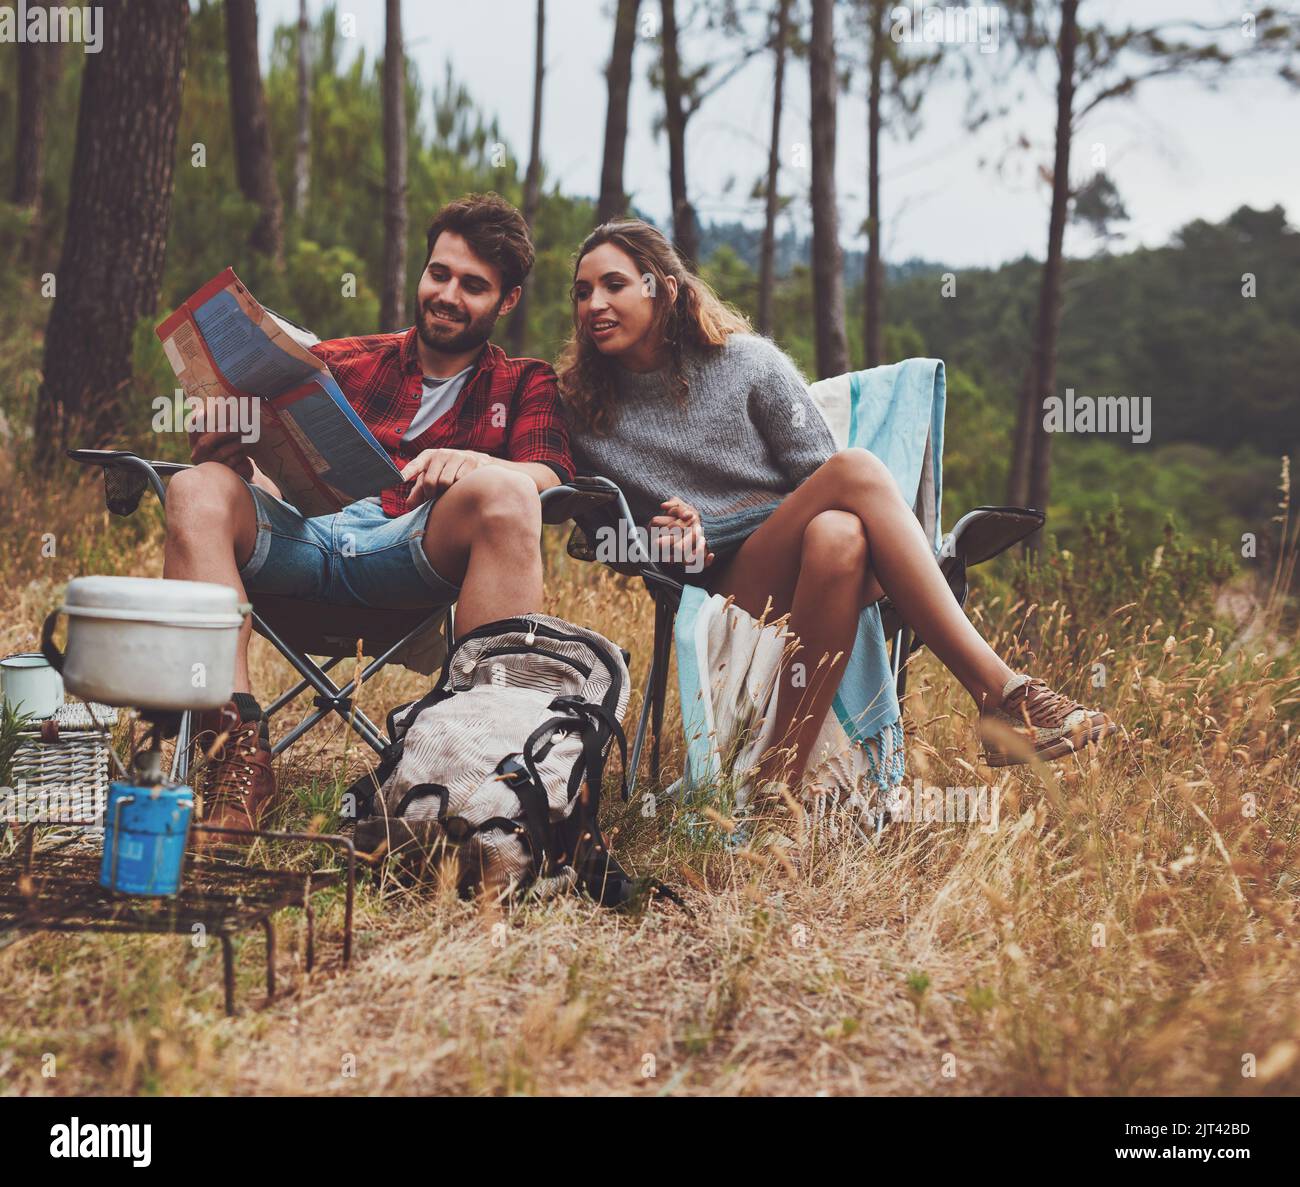 Abenteuerlustiges junges Paar, das sich auf einem Stadtplan ansieht, während es auf ihrem Campingplatz sitzt. Glückliches junges Paar, das im Wald zeltet. Stockfoto